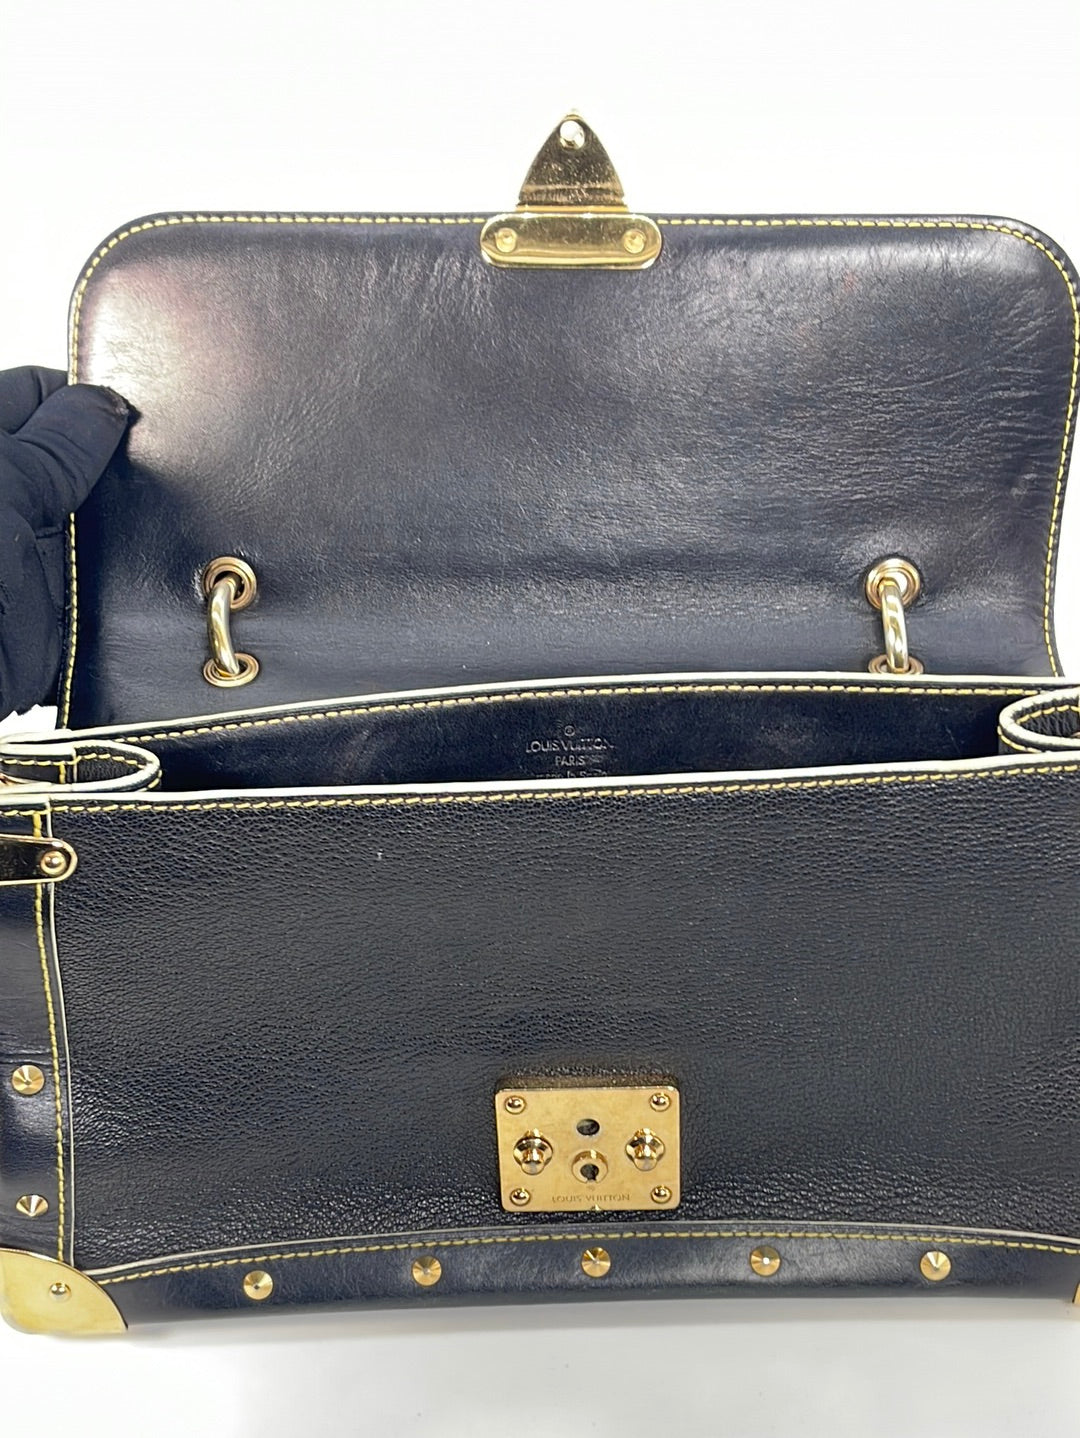 Louis Vuitton Prune Suhali Leather Le Talentueux Bag - Yoogi's Closet